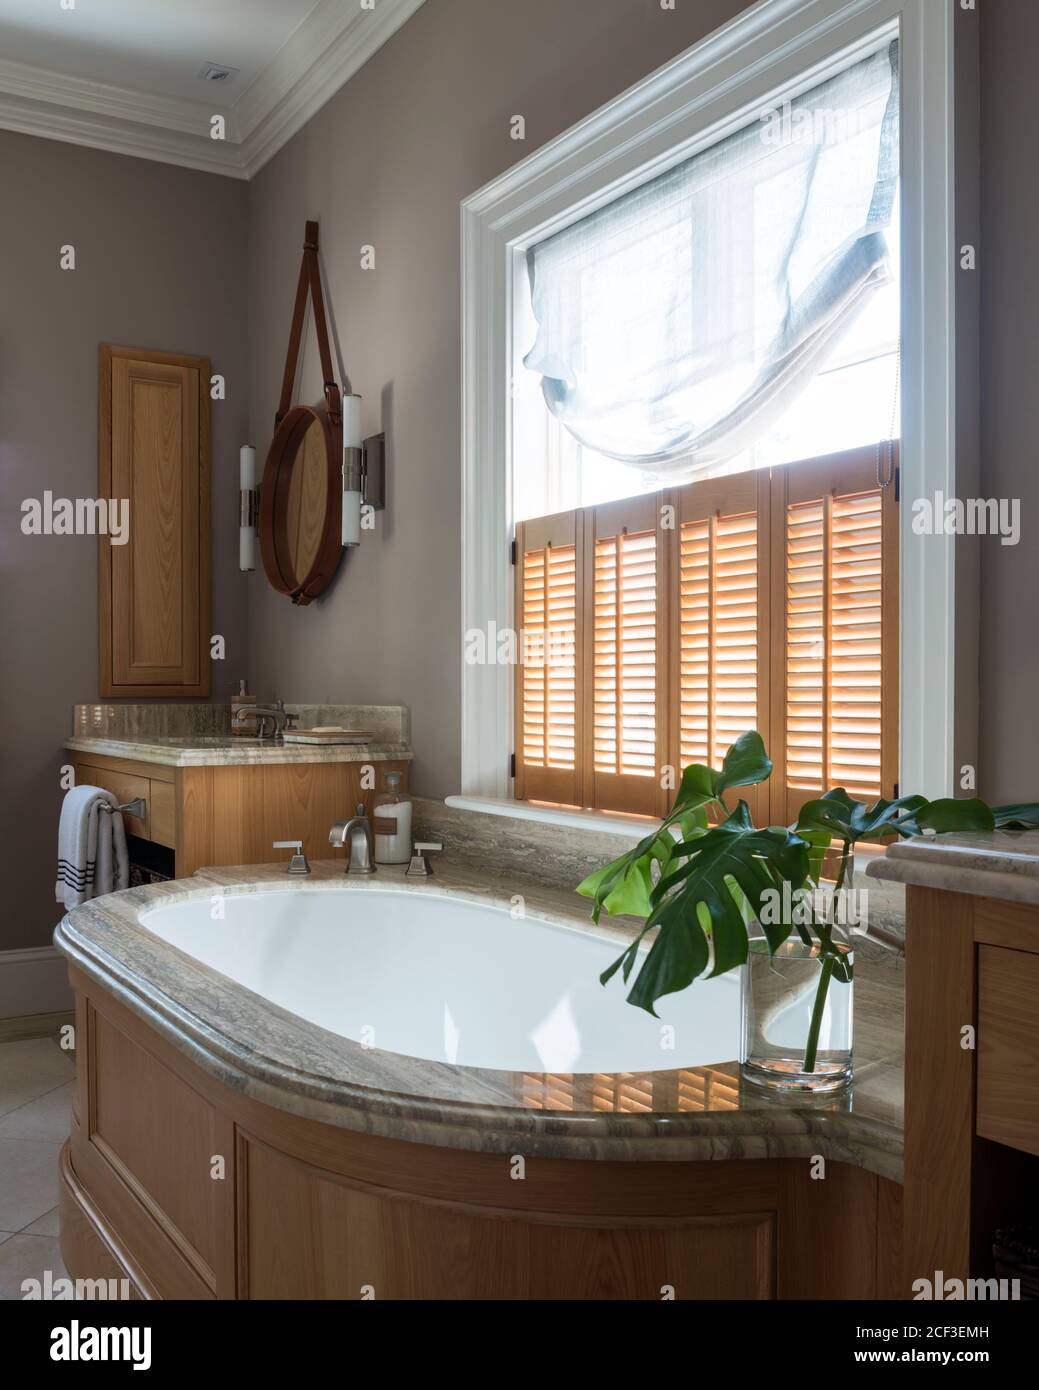 Bagno rustico con persiane sulla vasca da bagno Foto Stock